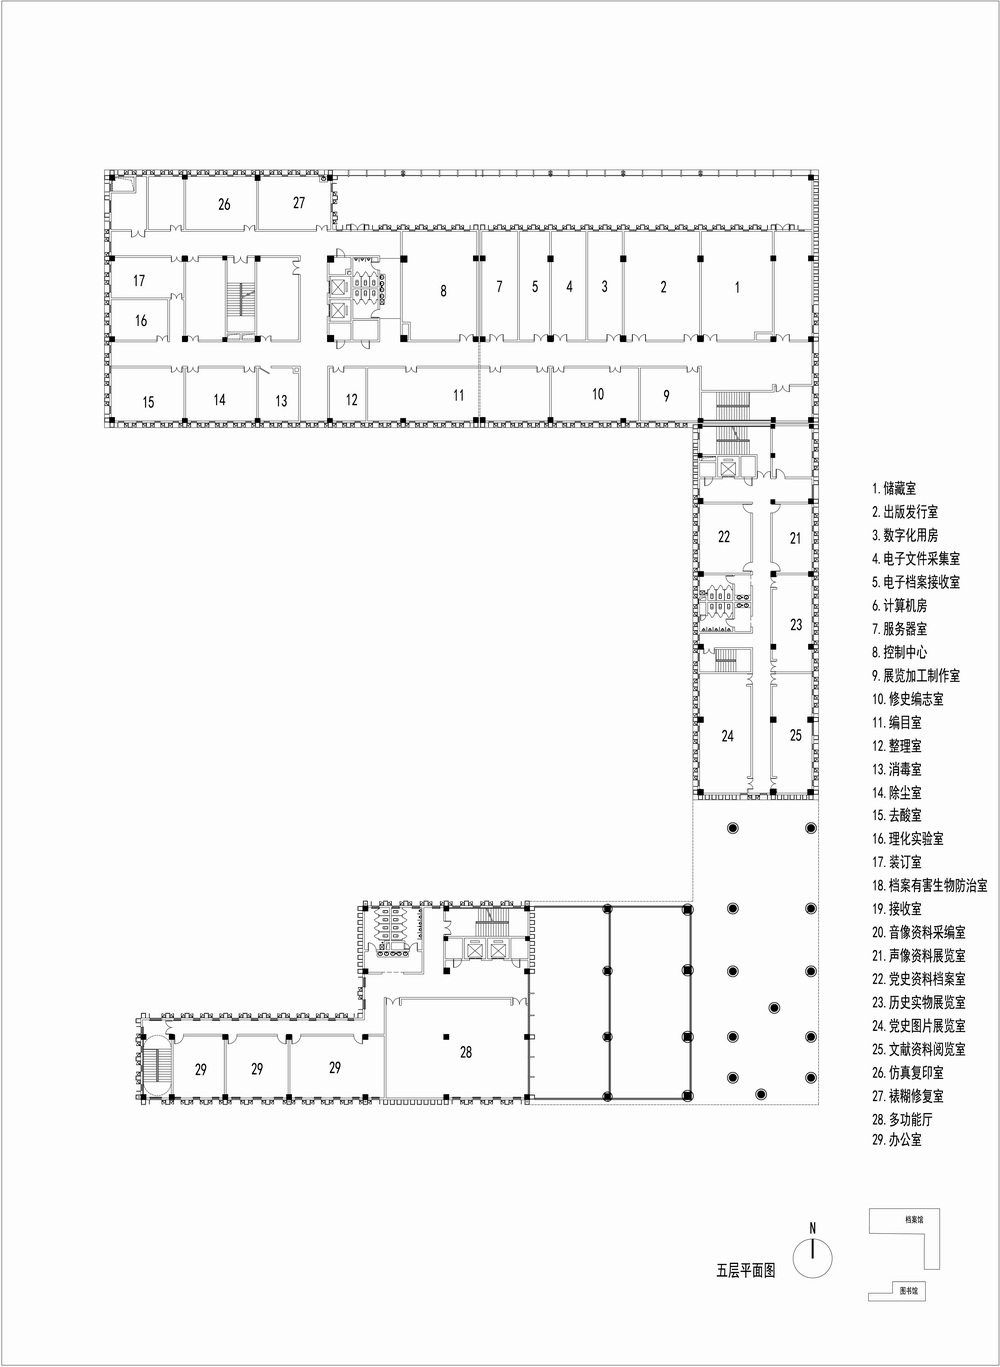 沂南图书档案馆 建筑设计 / 中央美术学院建筑7工作室